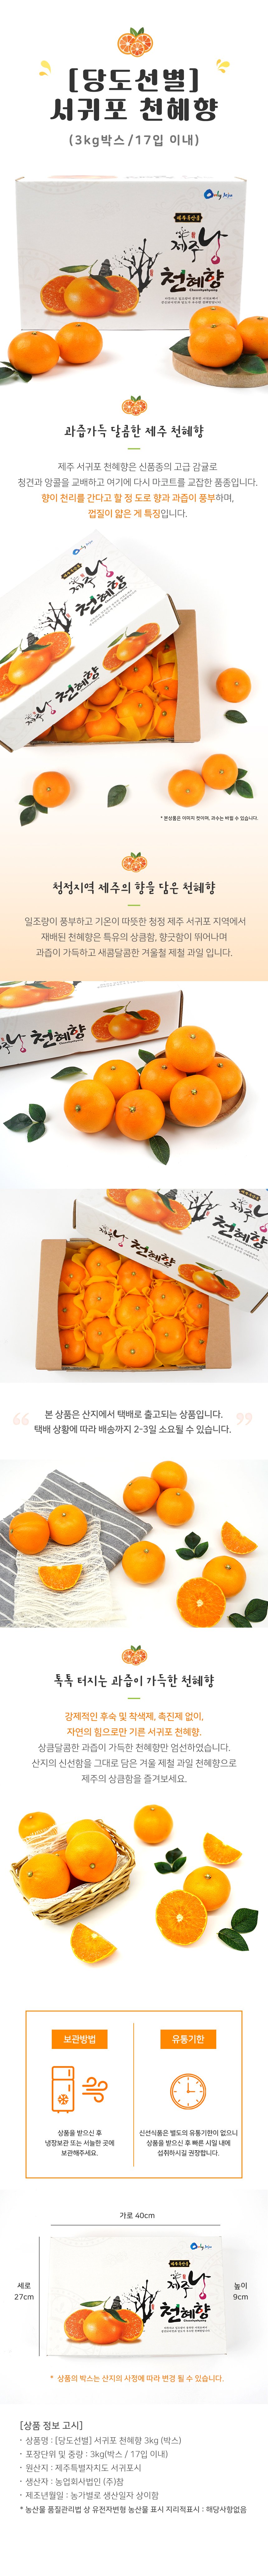 [택배상품] 서귀포 천혜향 3kg, 17입 이내 (박스) 